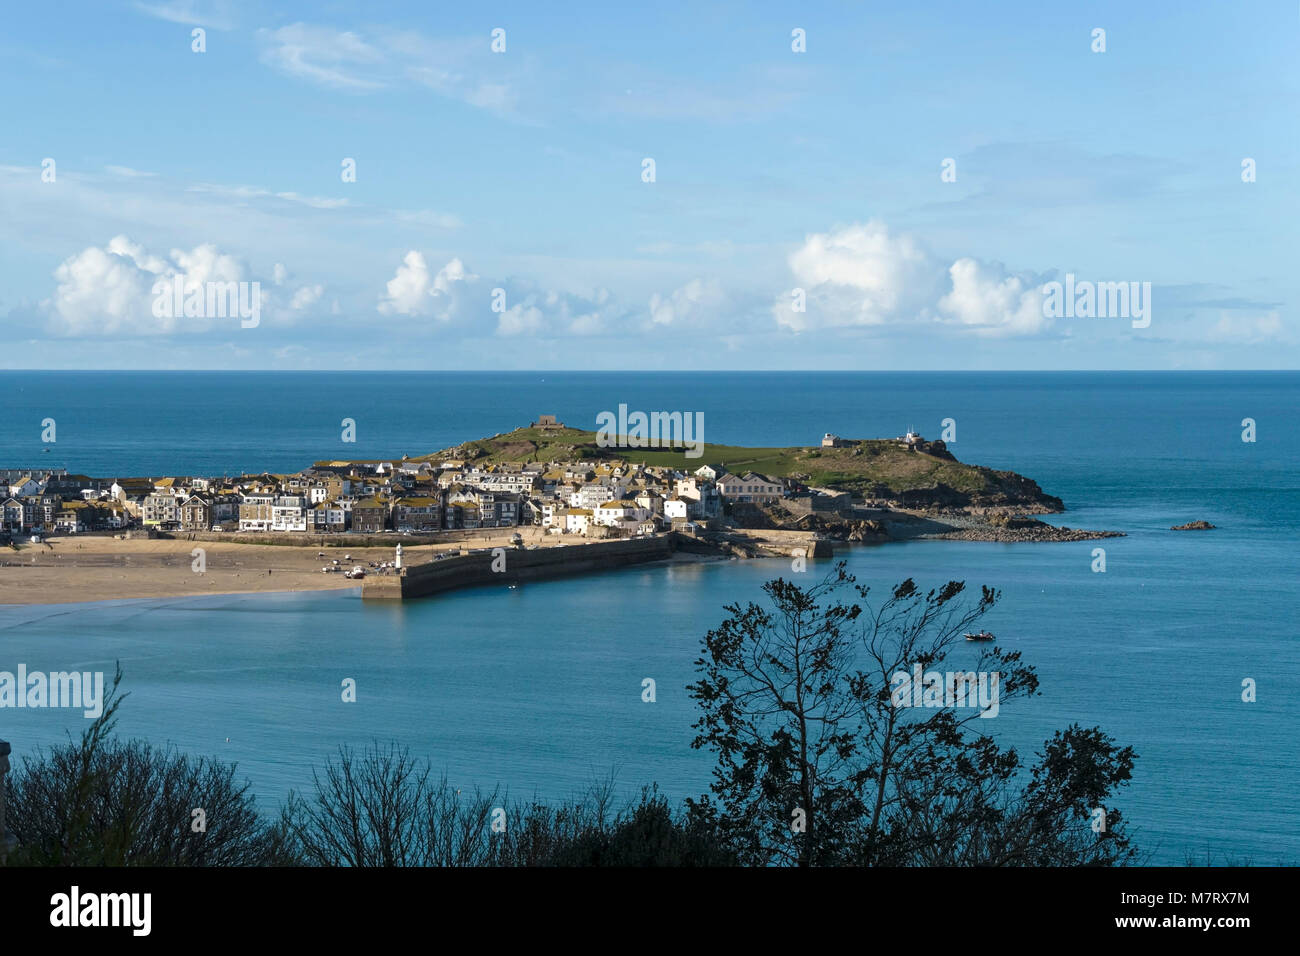 Der Cornish Stadt am Meer und Hafen von St. Ives in Cornwall, England, Großbritannien Stockfoto